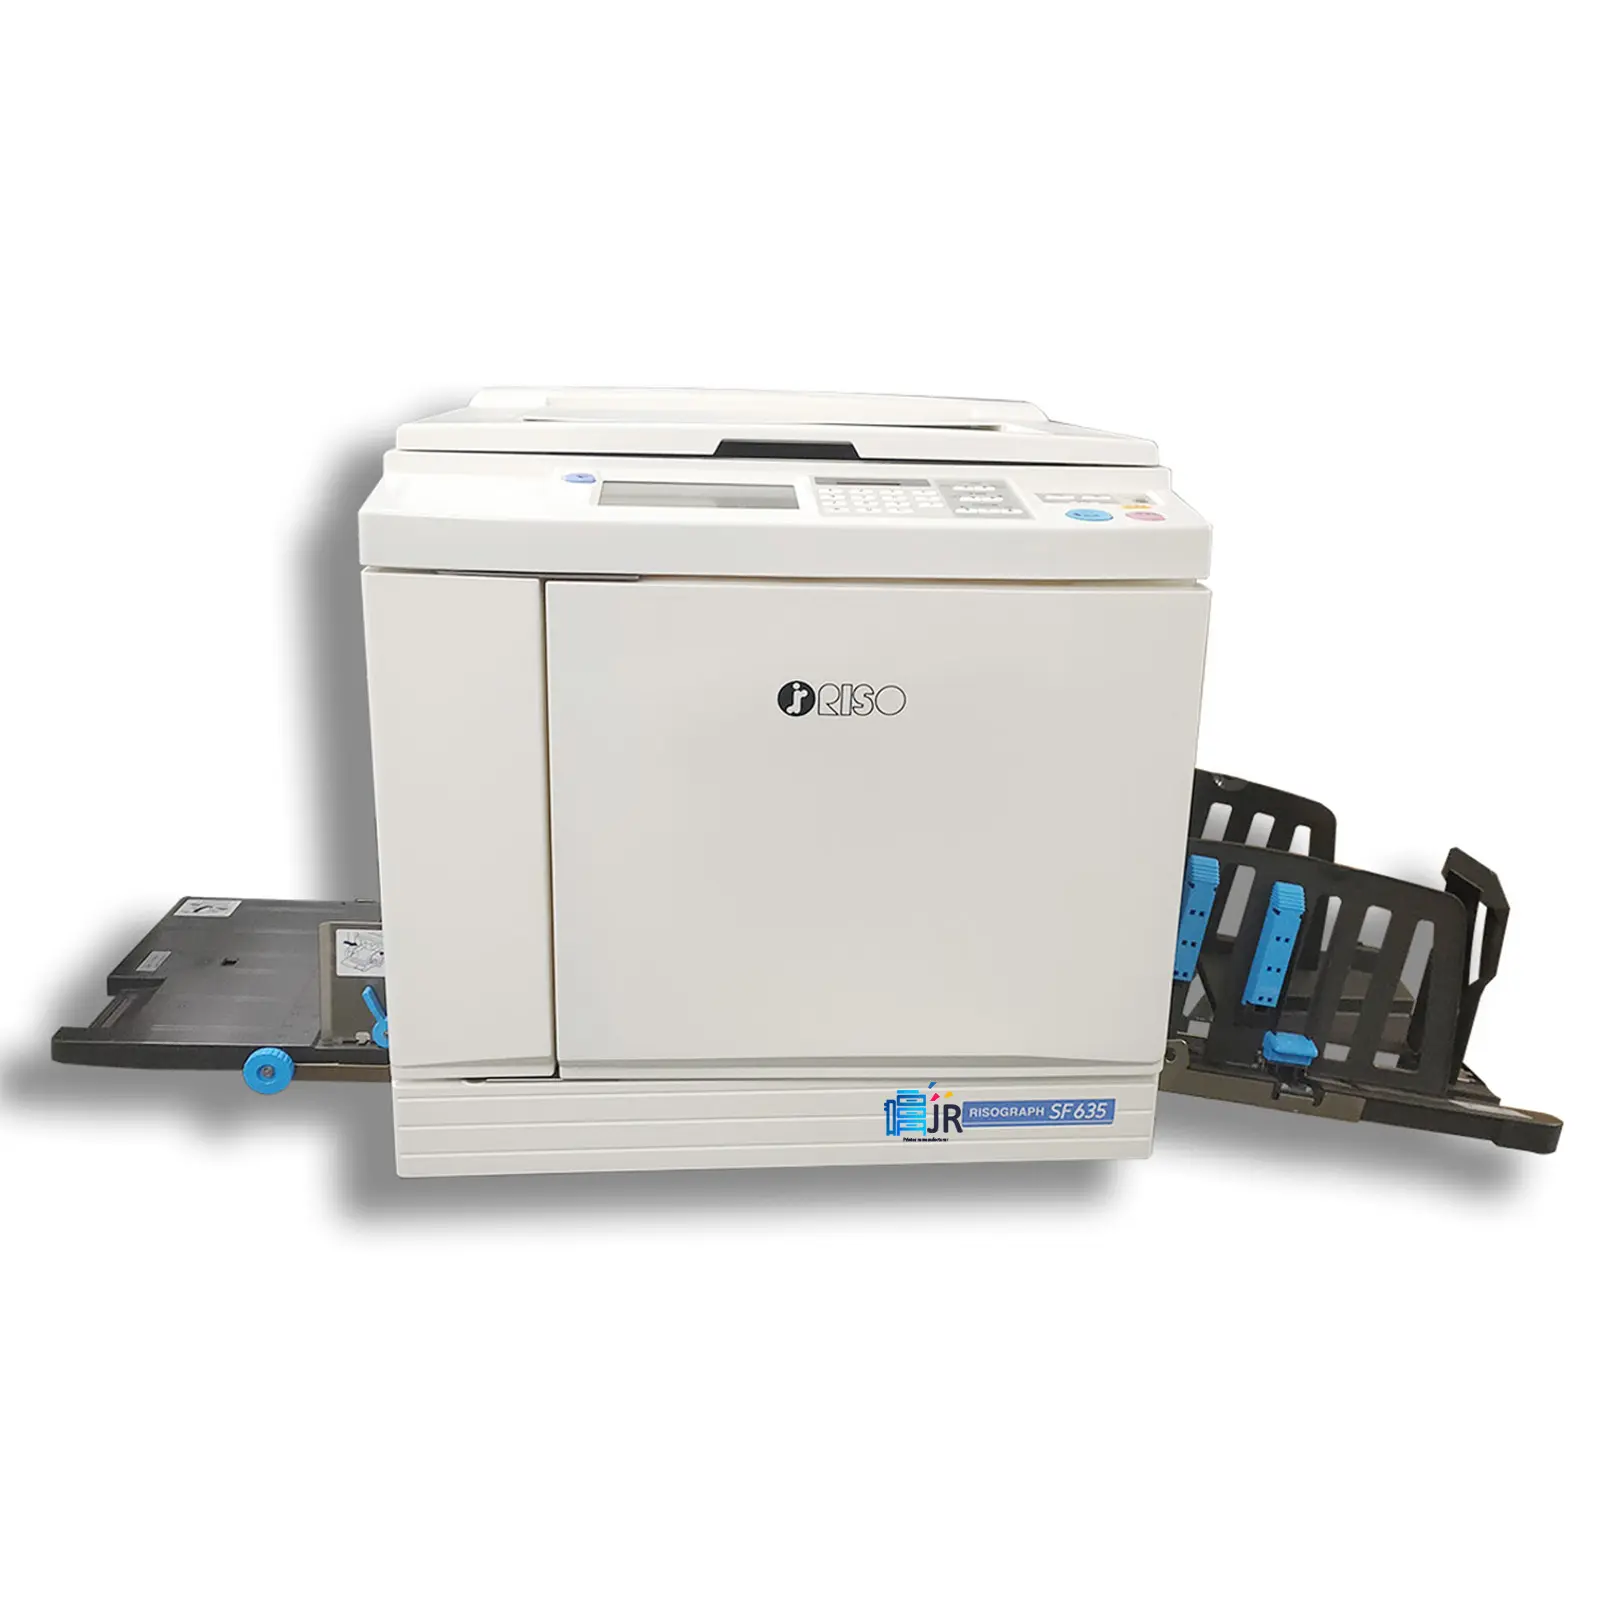 Riso SF635 Copy Machine Refurbished Digital Duplicator Prining Machine 5s A3 Colored Scan Machine Printer General Colored Copier